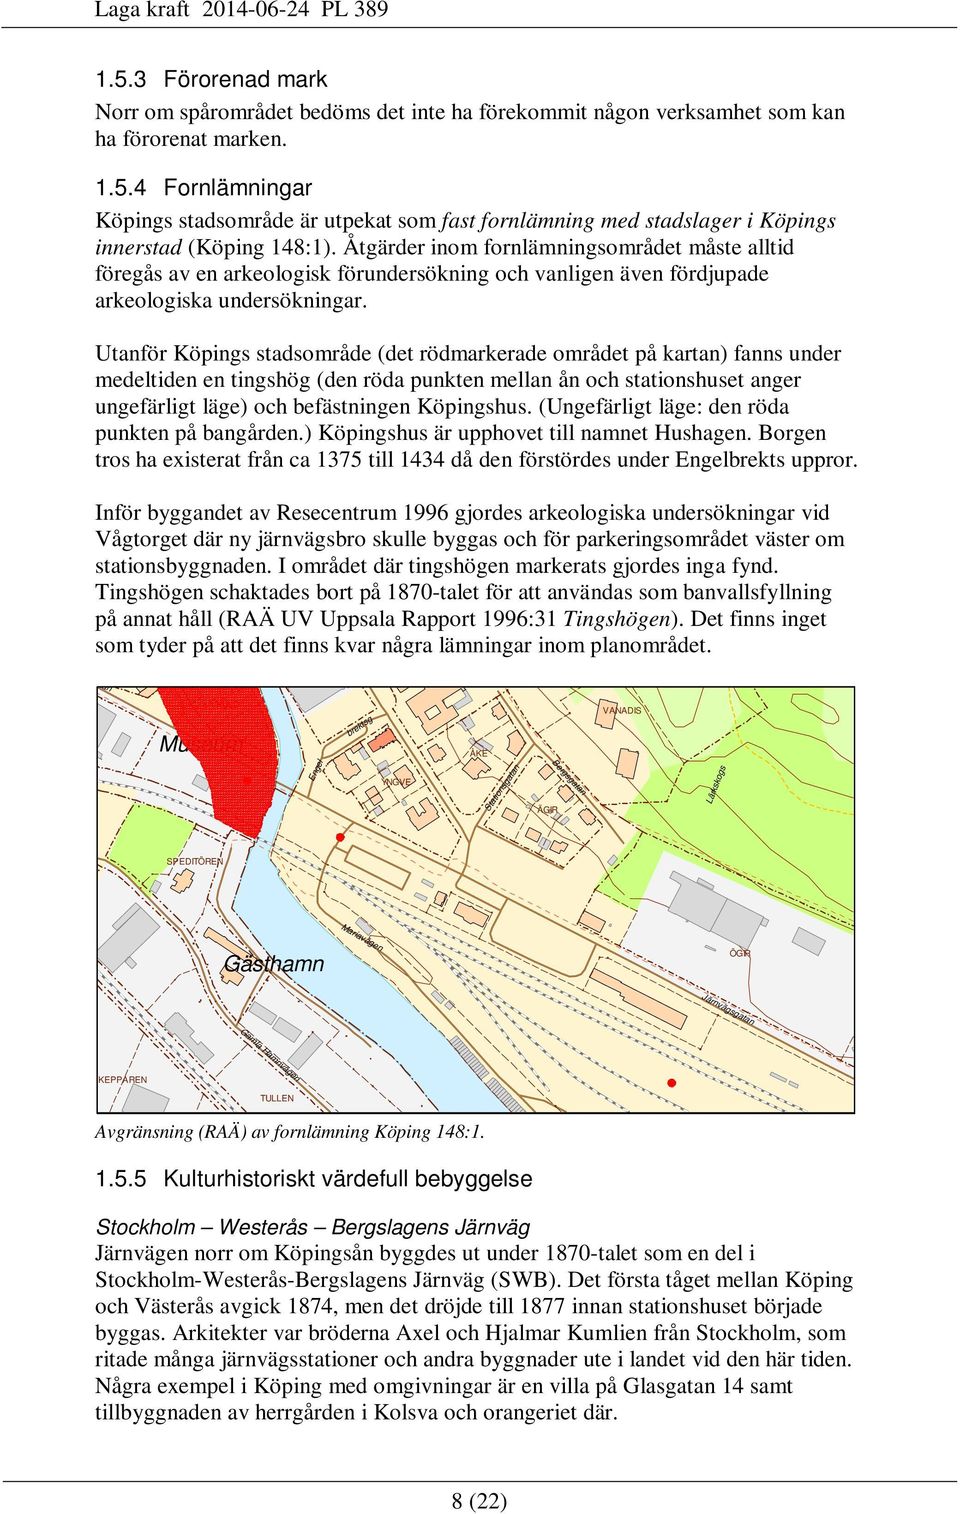 Utanför Köpings stadsområde (det rödmarkerade området på kartan) fanns under medeltiden en tingshög (den röda punkten mellan ån och stationshuset anger ungefärligt läge) och befästningen Köpingshus.